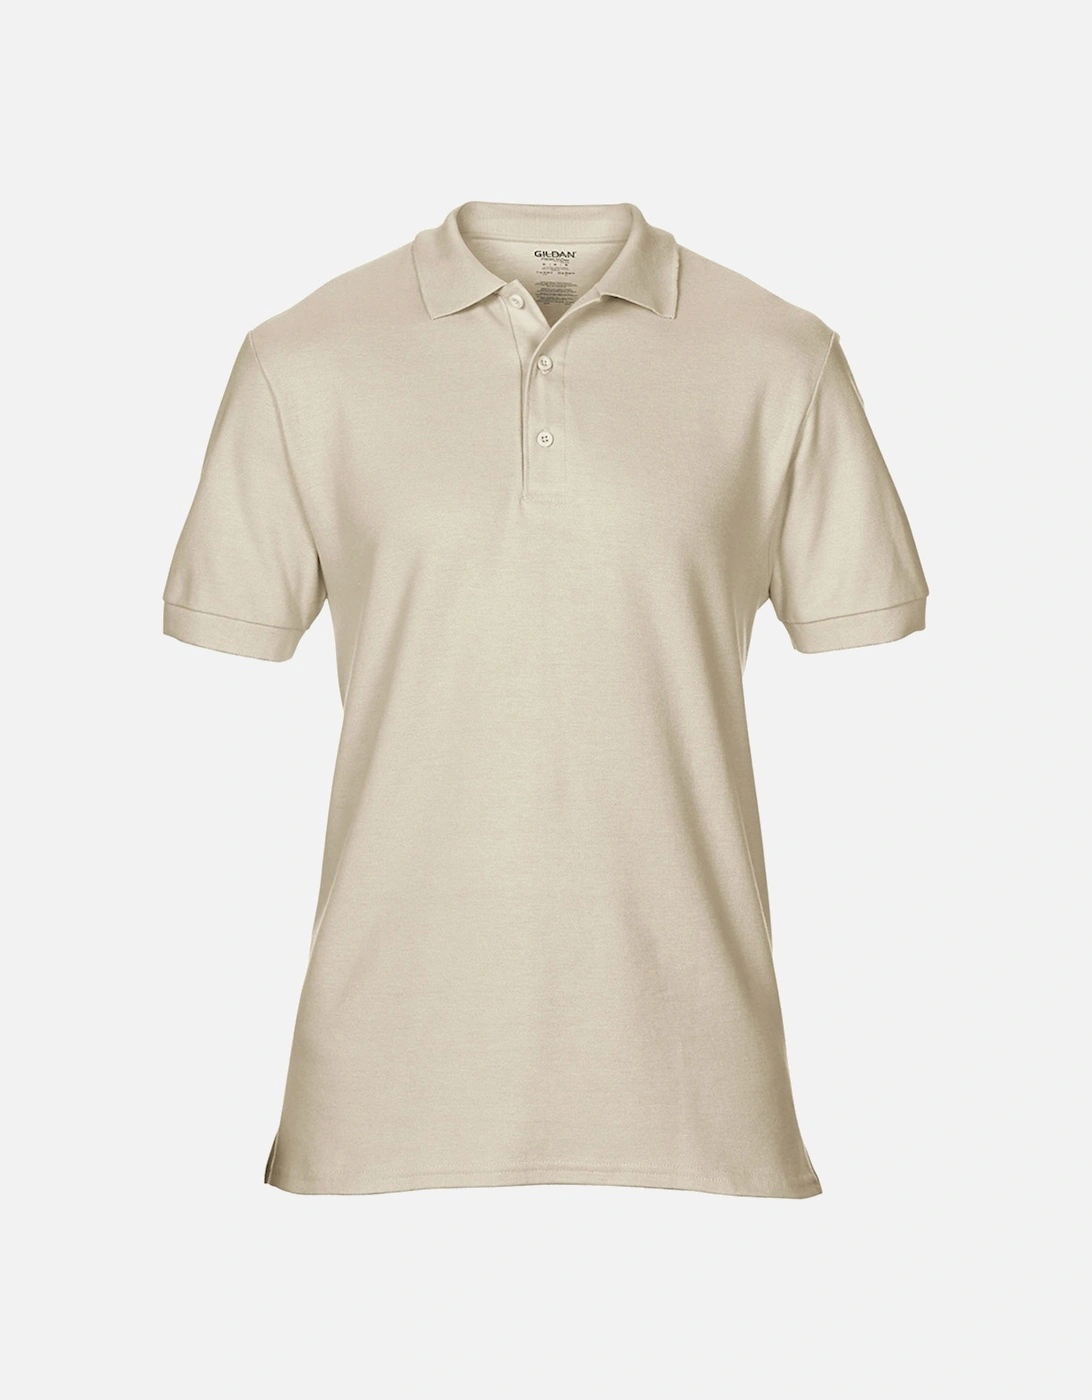 Mens Premium Cotton Sport Double Pique Polo Shirt, 6 of 5